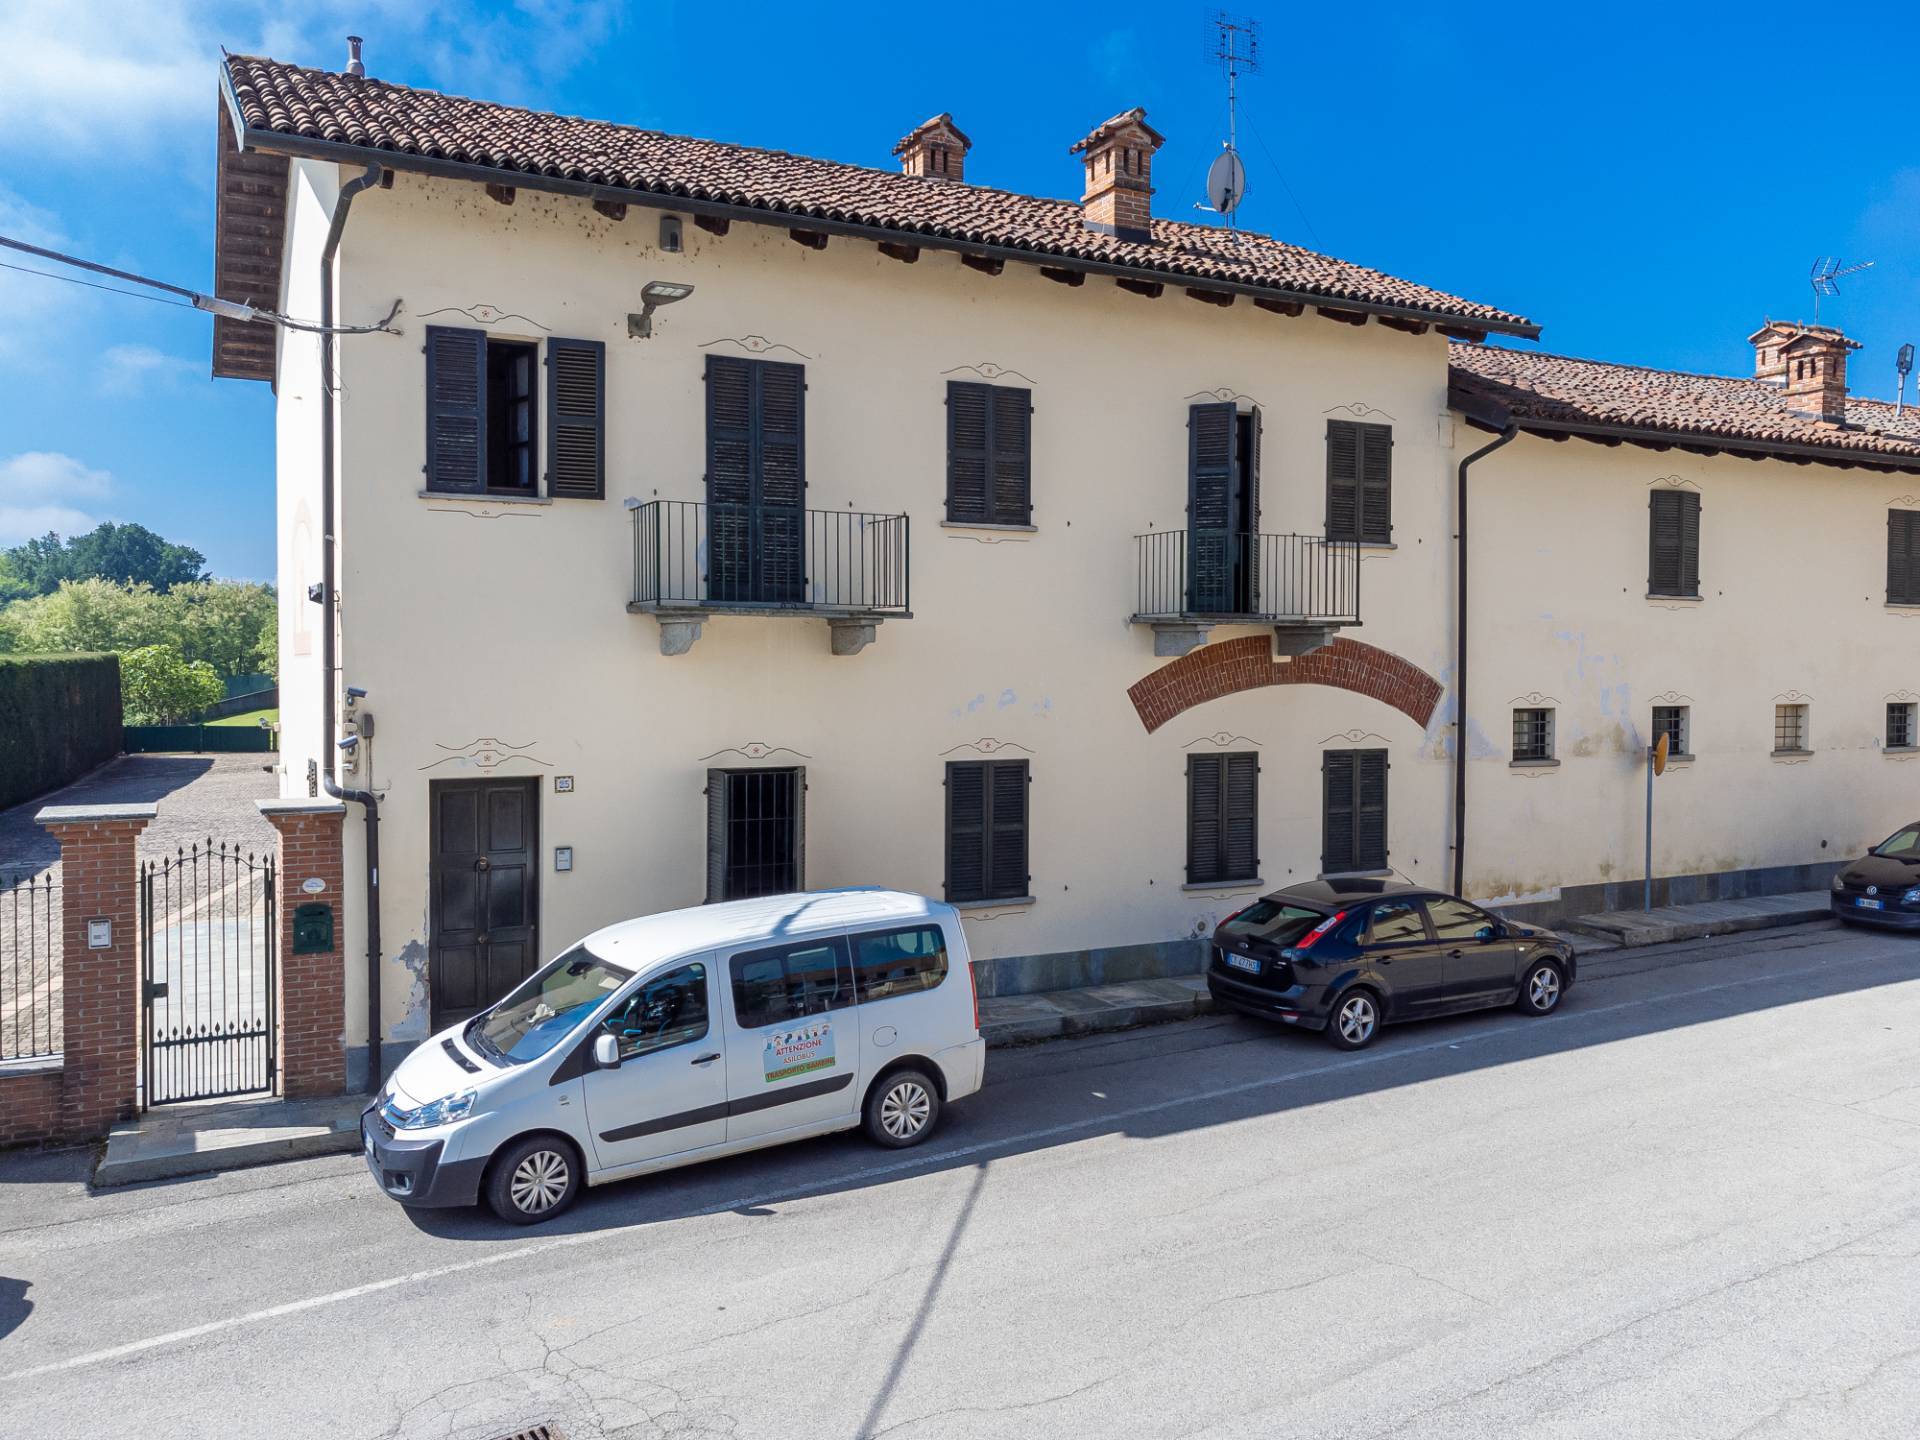 Rustico / Casale in vendita a Cavallermaggiore, 7 locali, prezzo € 485.000 | CambioCasa.it